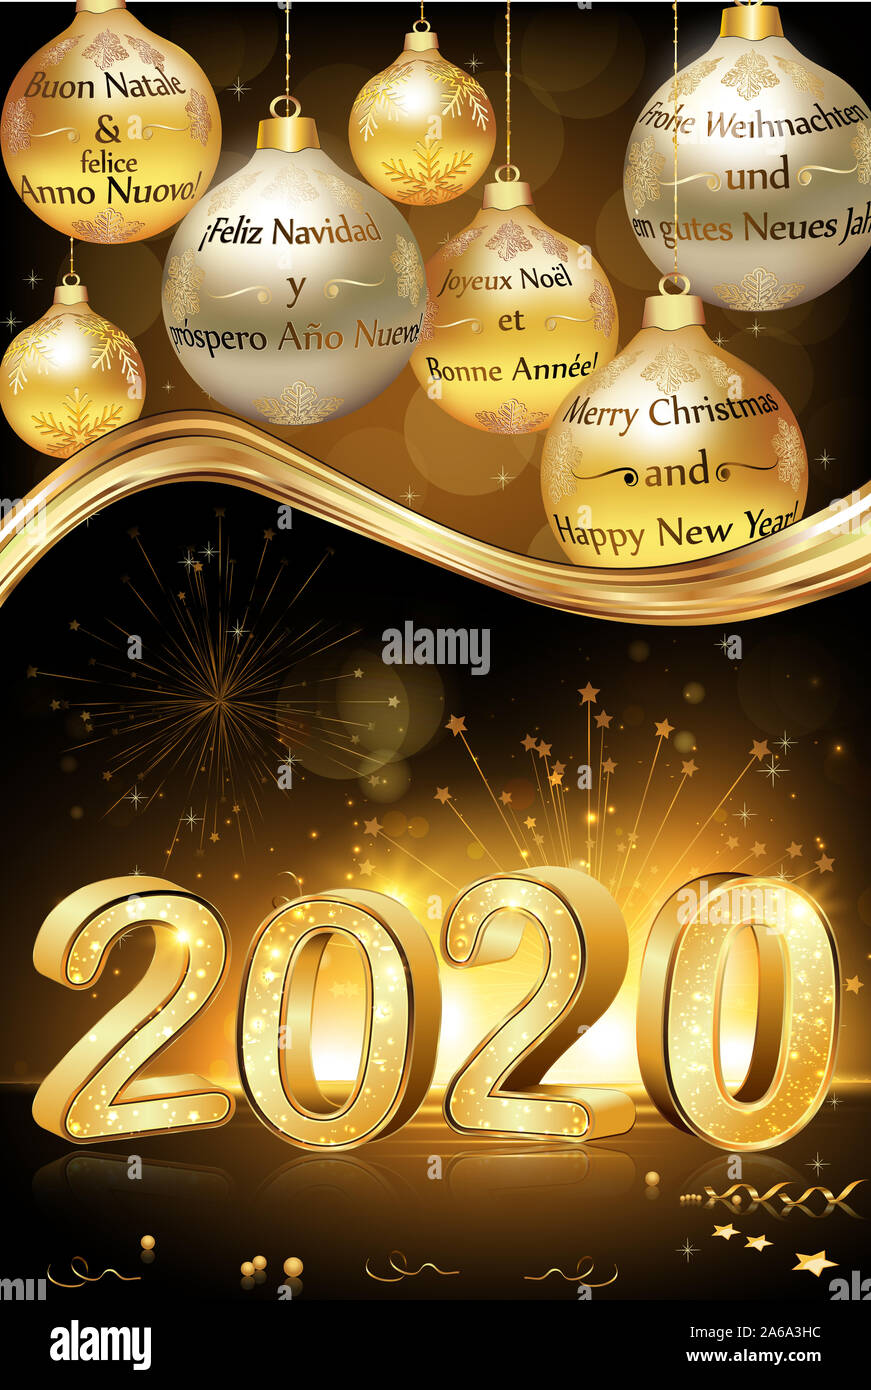 Buon Natale Olandese.Buon Natale E Felice Anno Nuovo 2020 Scritto In Molte Lingue Inglese Francese Spagnolo Tedesco Italiano E Olandese Foto Stock Alamy